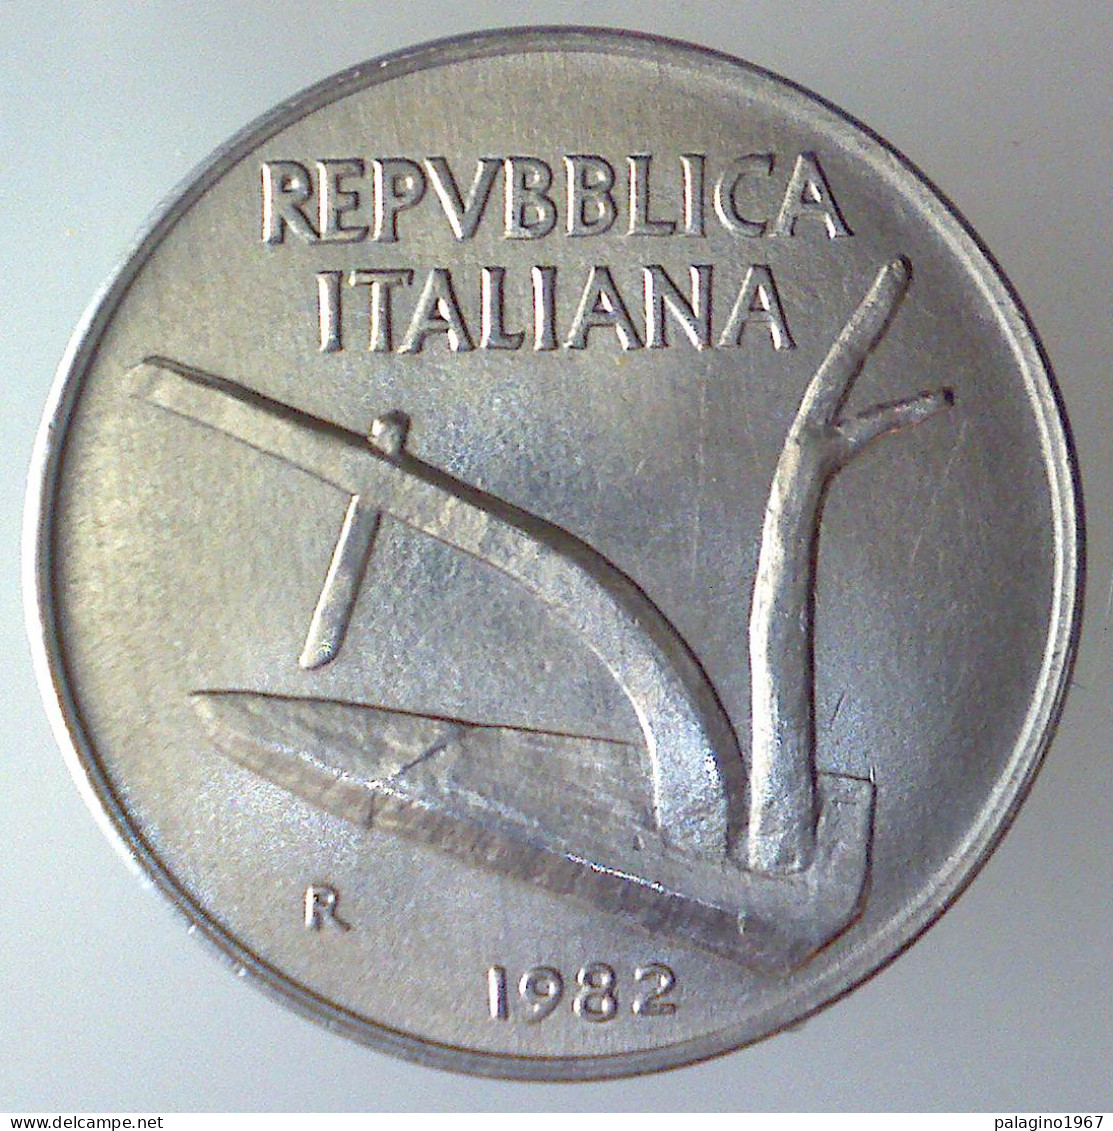 REPUBBLICA ITALIANA 10 Lire Spighe 1982 FDC  - 10 Lire